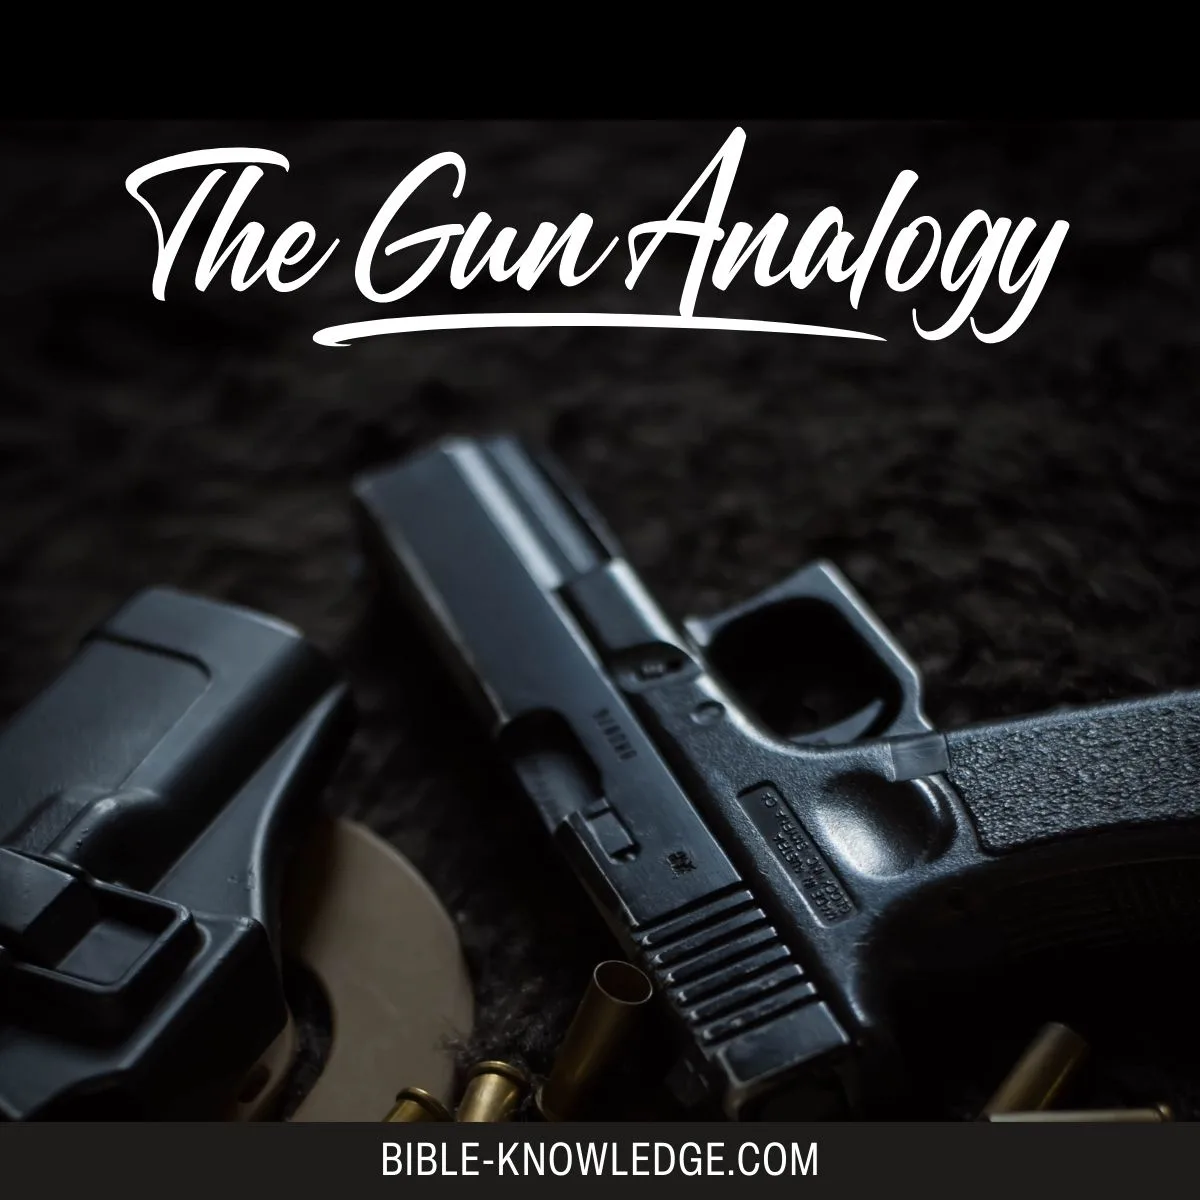 The Gun Analogy